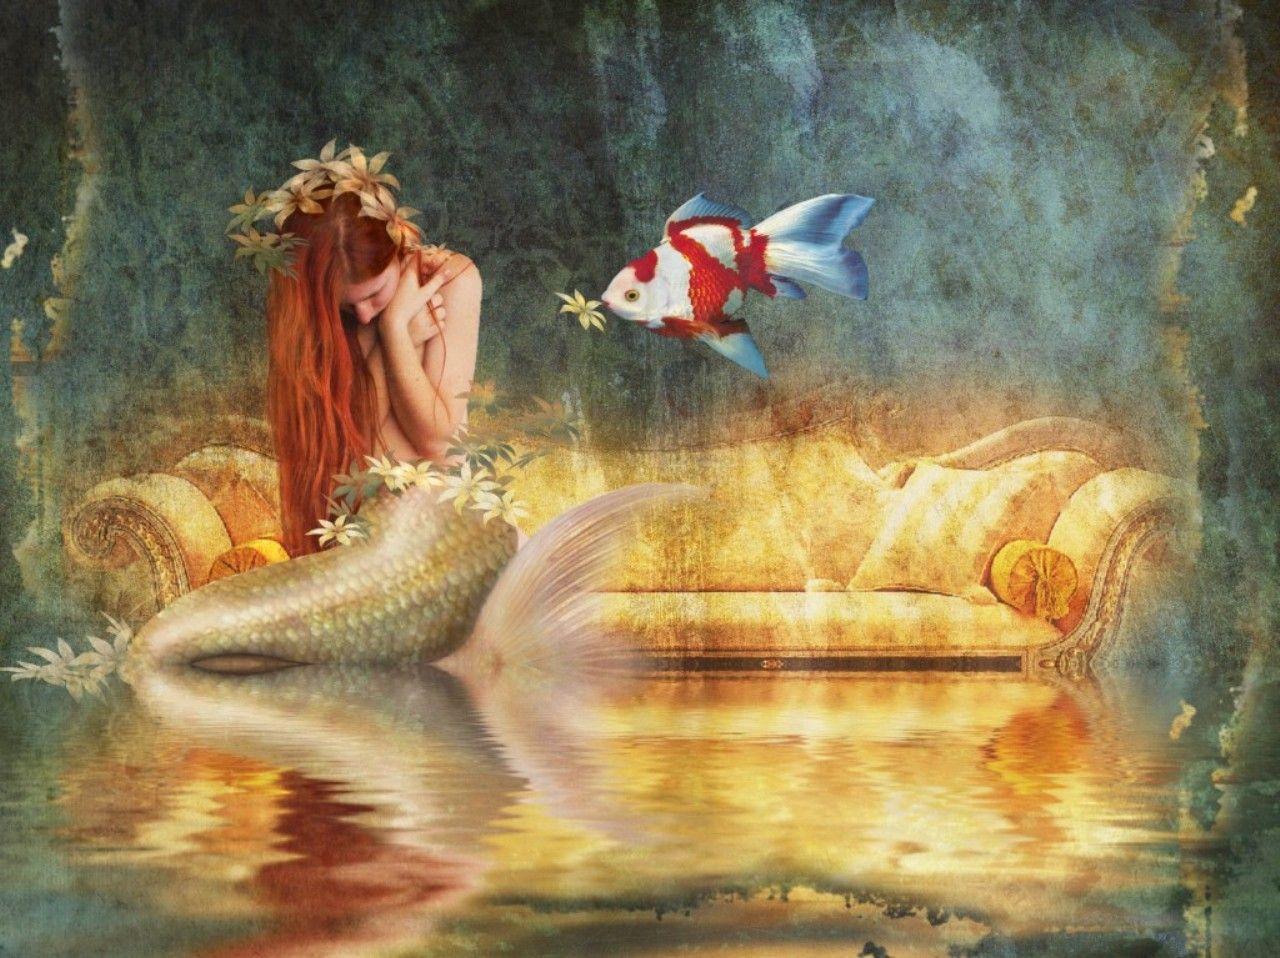 Mermaid Computer Wallpaper, Desktop Backgroundx958. Mermaid wallpaper, Mermaid background, Beautiful mermaids